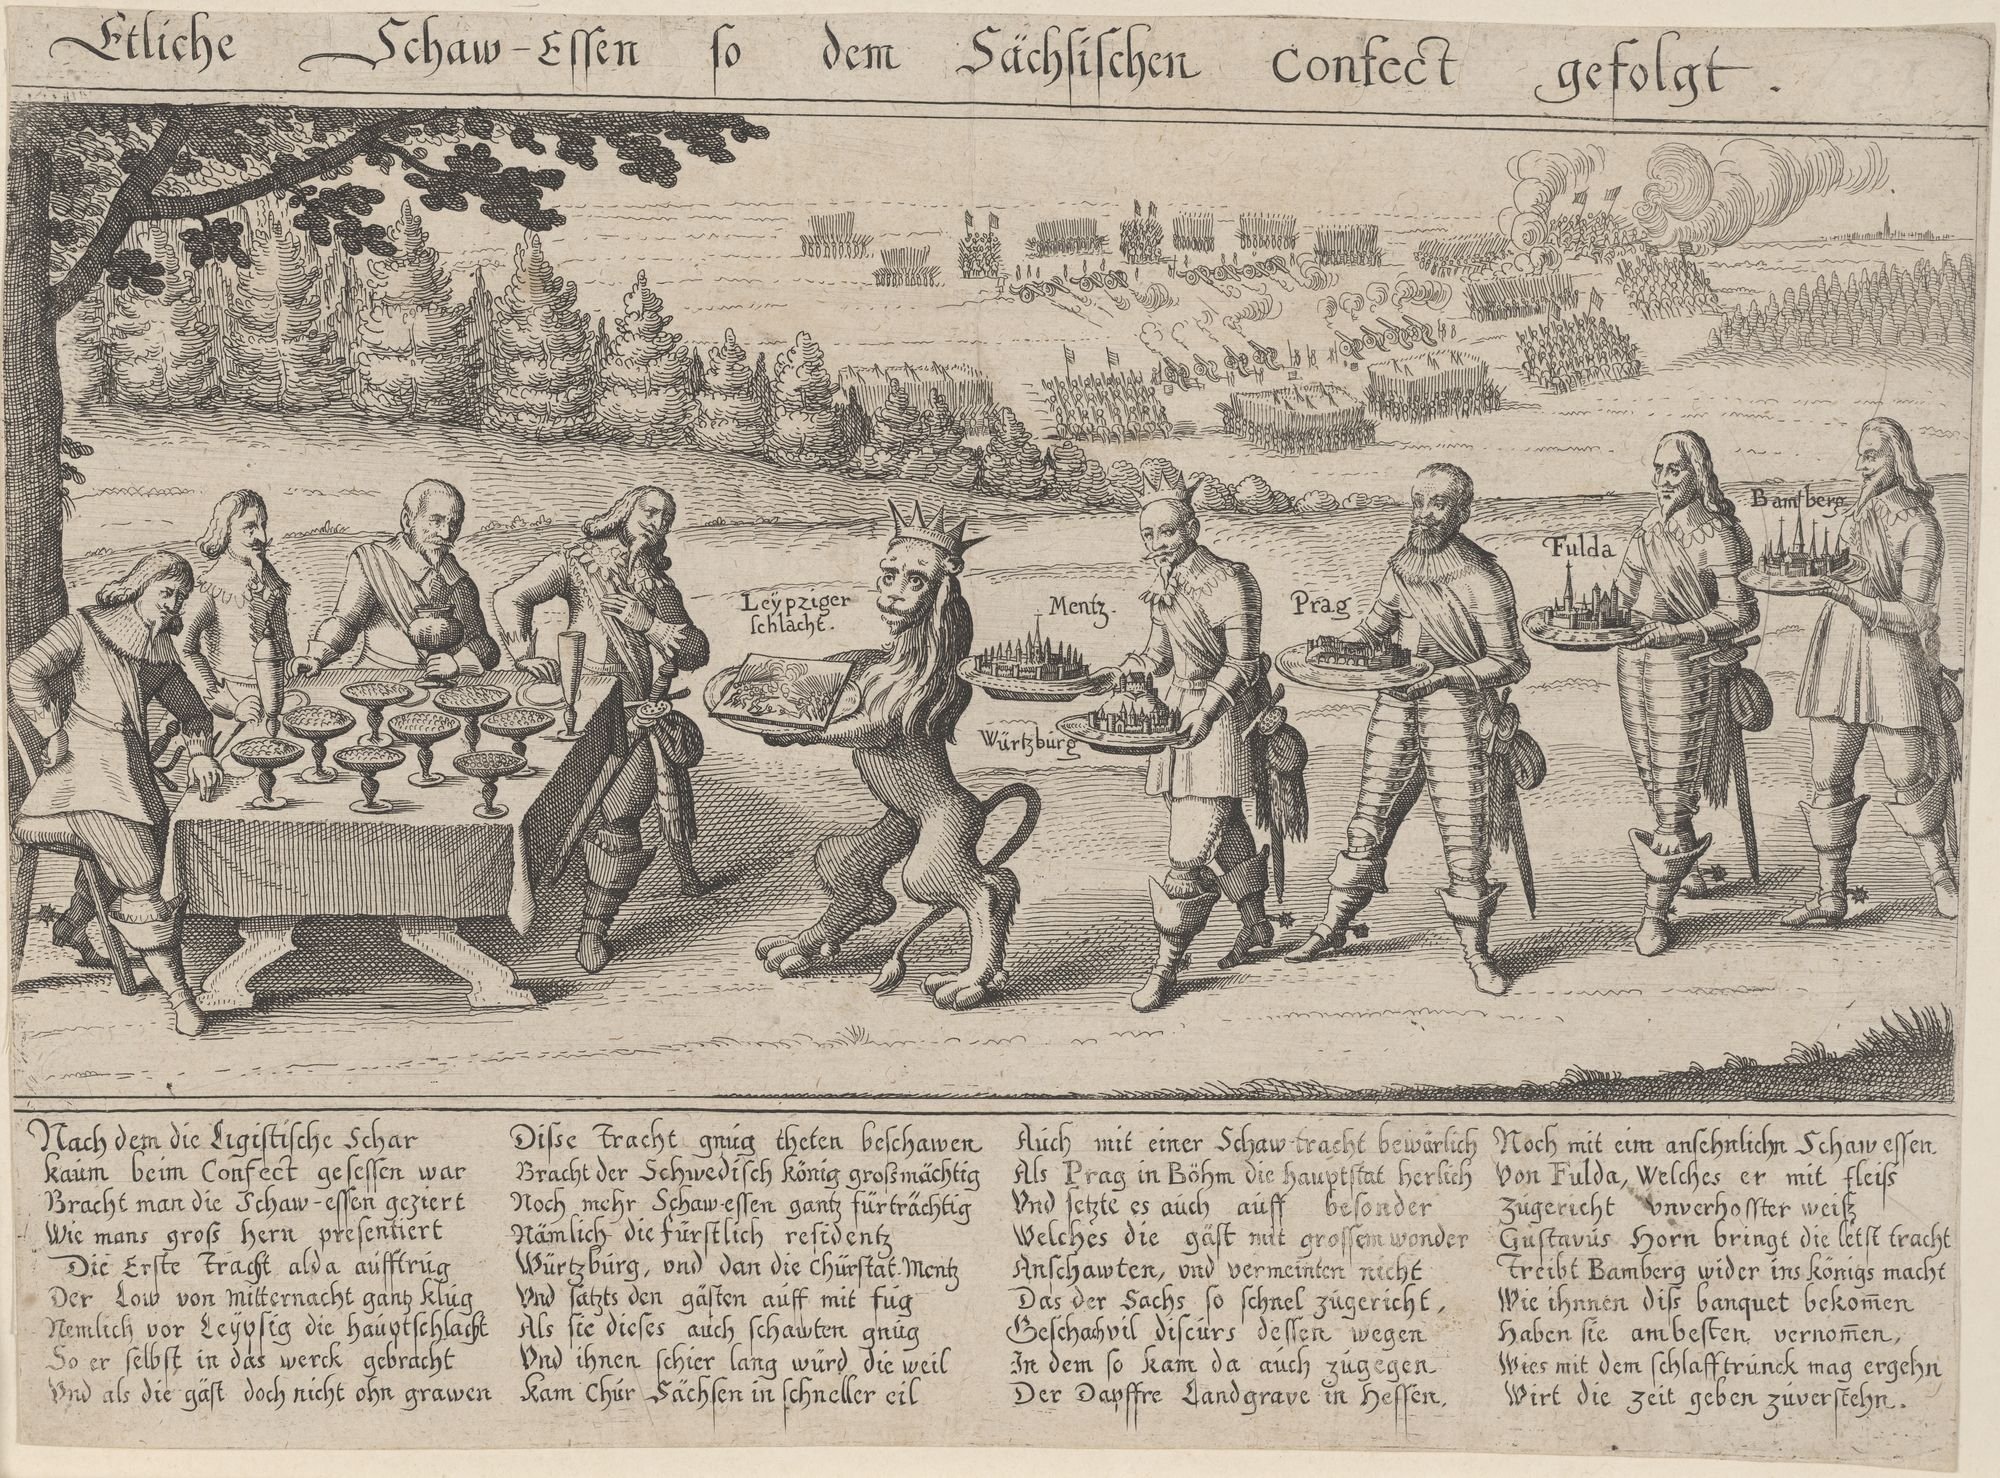 Etliche Schaw-Essen so dem Sächsischen confect gefolgt. (Kulturstiftung Sachsen-Anhalt Public Domain Mark)